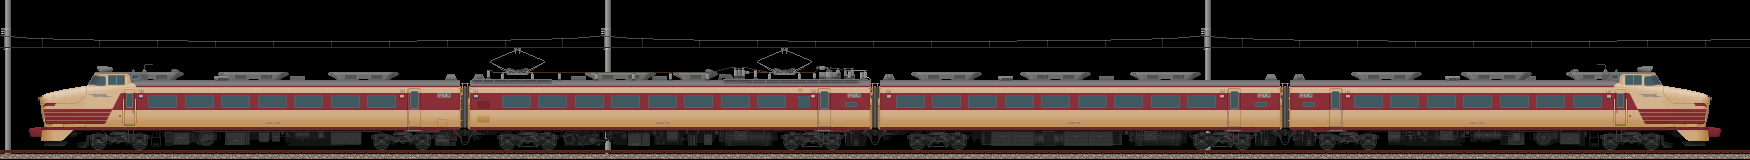 485系特急形電車･初期型(2012/1/7更新)